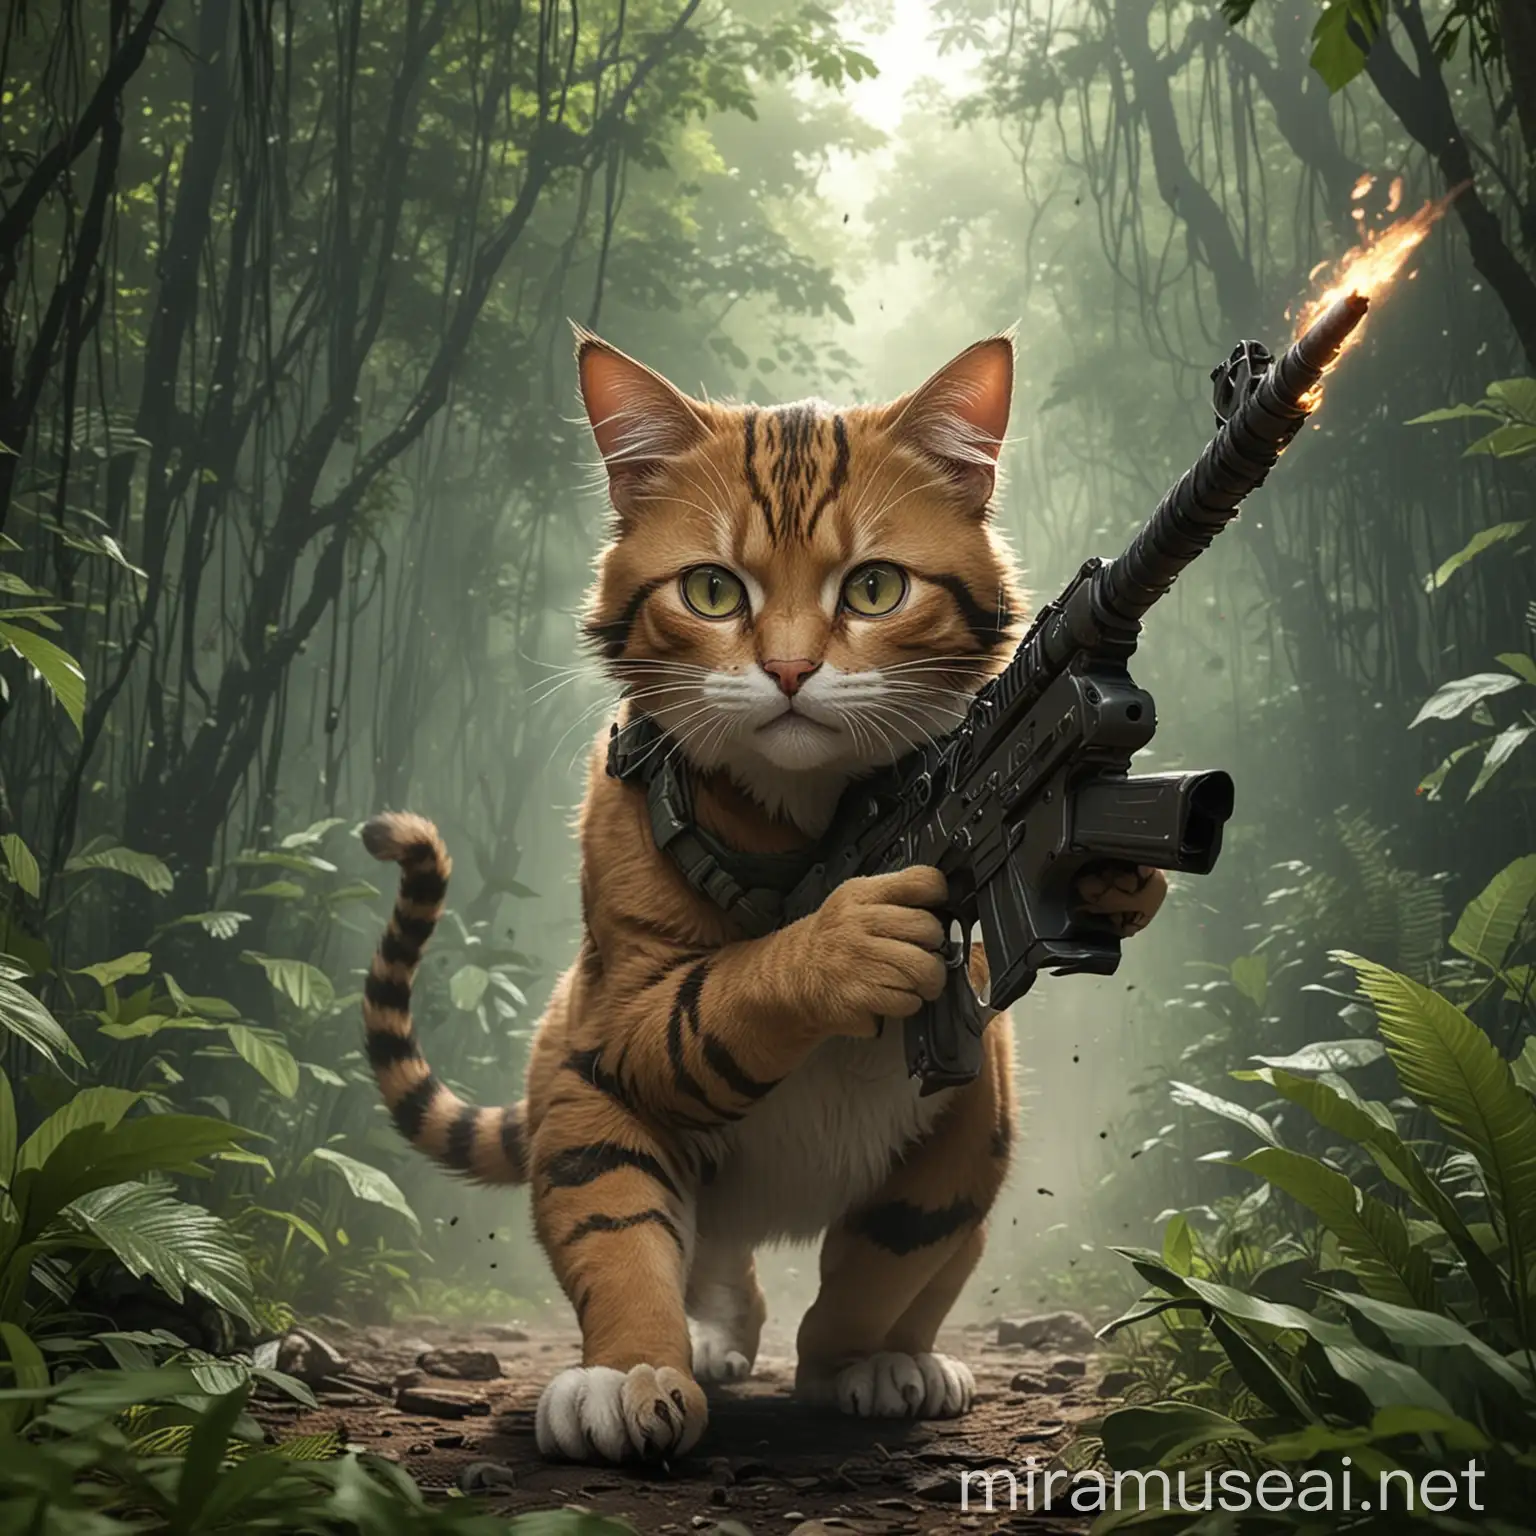 un gato guerrillero, anime rambo, en una jungla atacando. disparando.